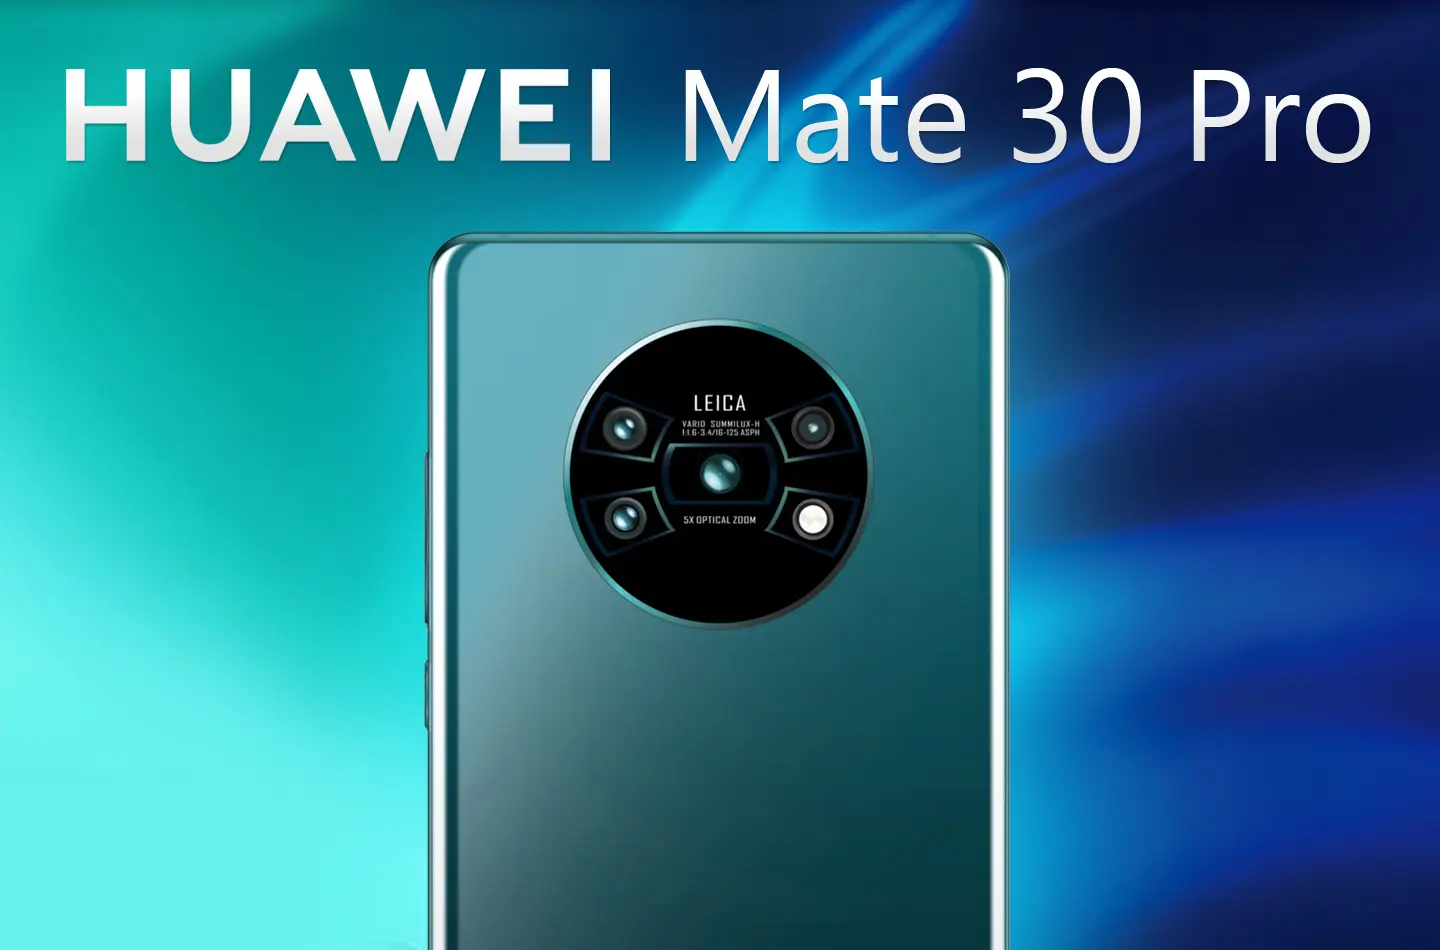 Huawei Mate 30 Pro aparece en pruebas dentro del transporte público en China